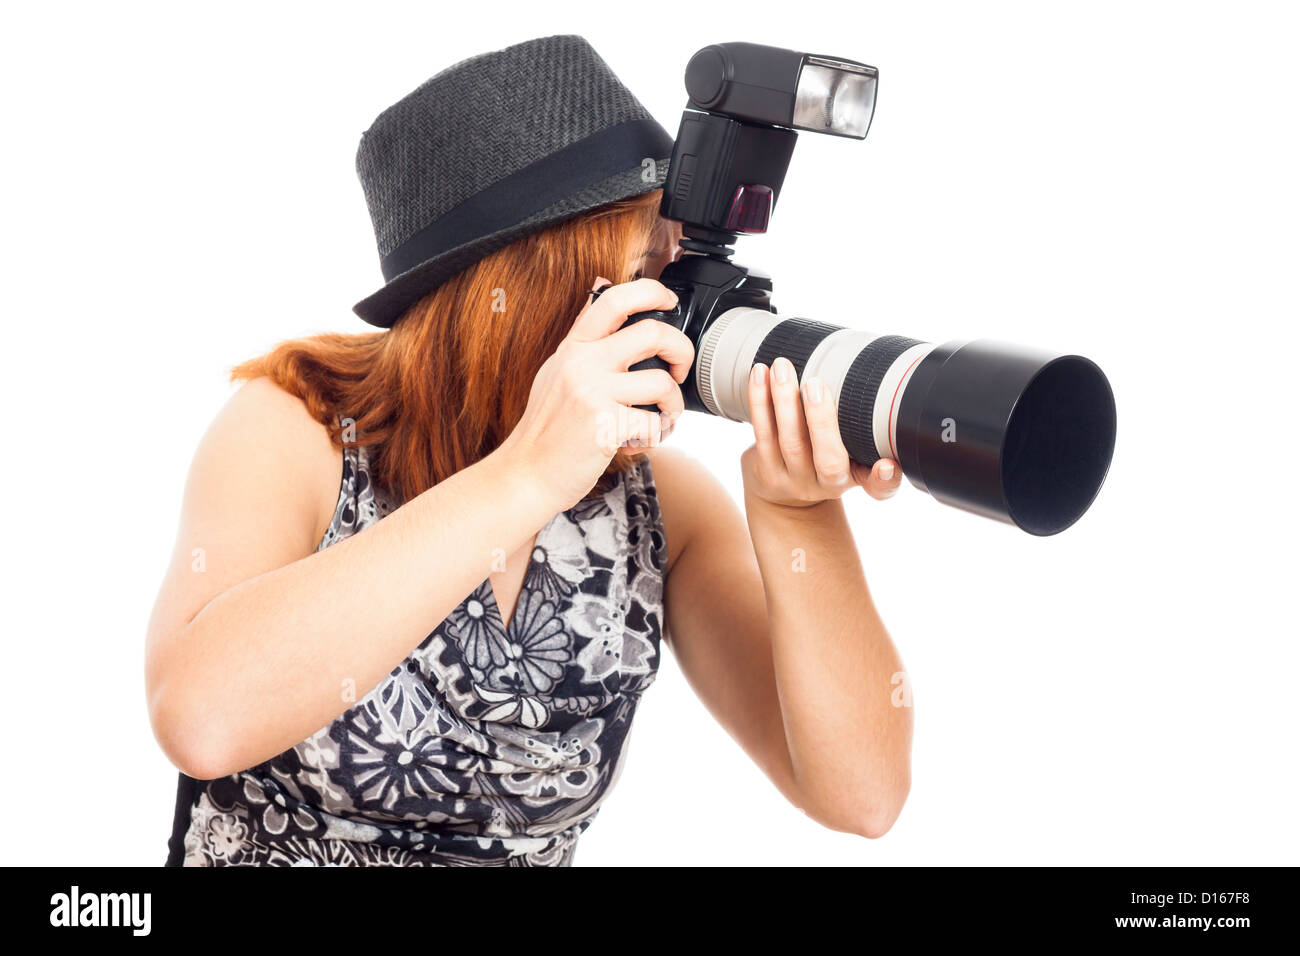 Femmina giovane fotografo professionale con fotocamera, isolati su sfondo bianco. Foto Stock